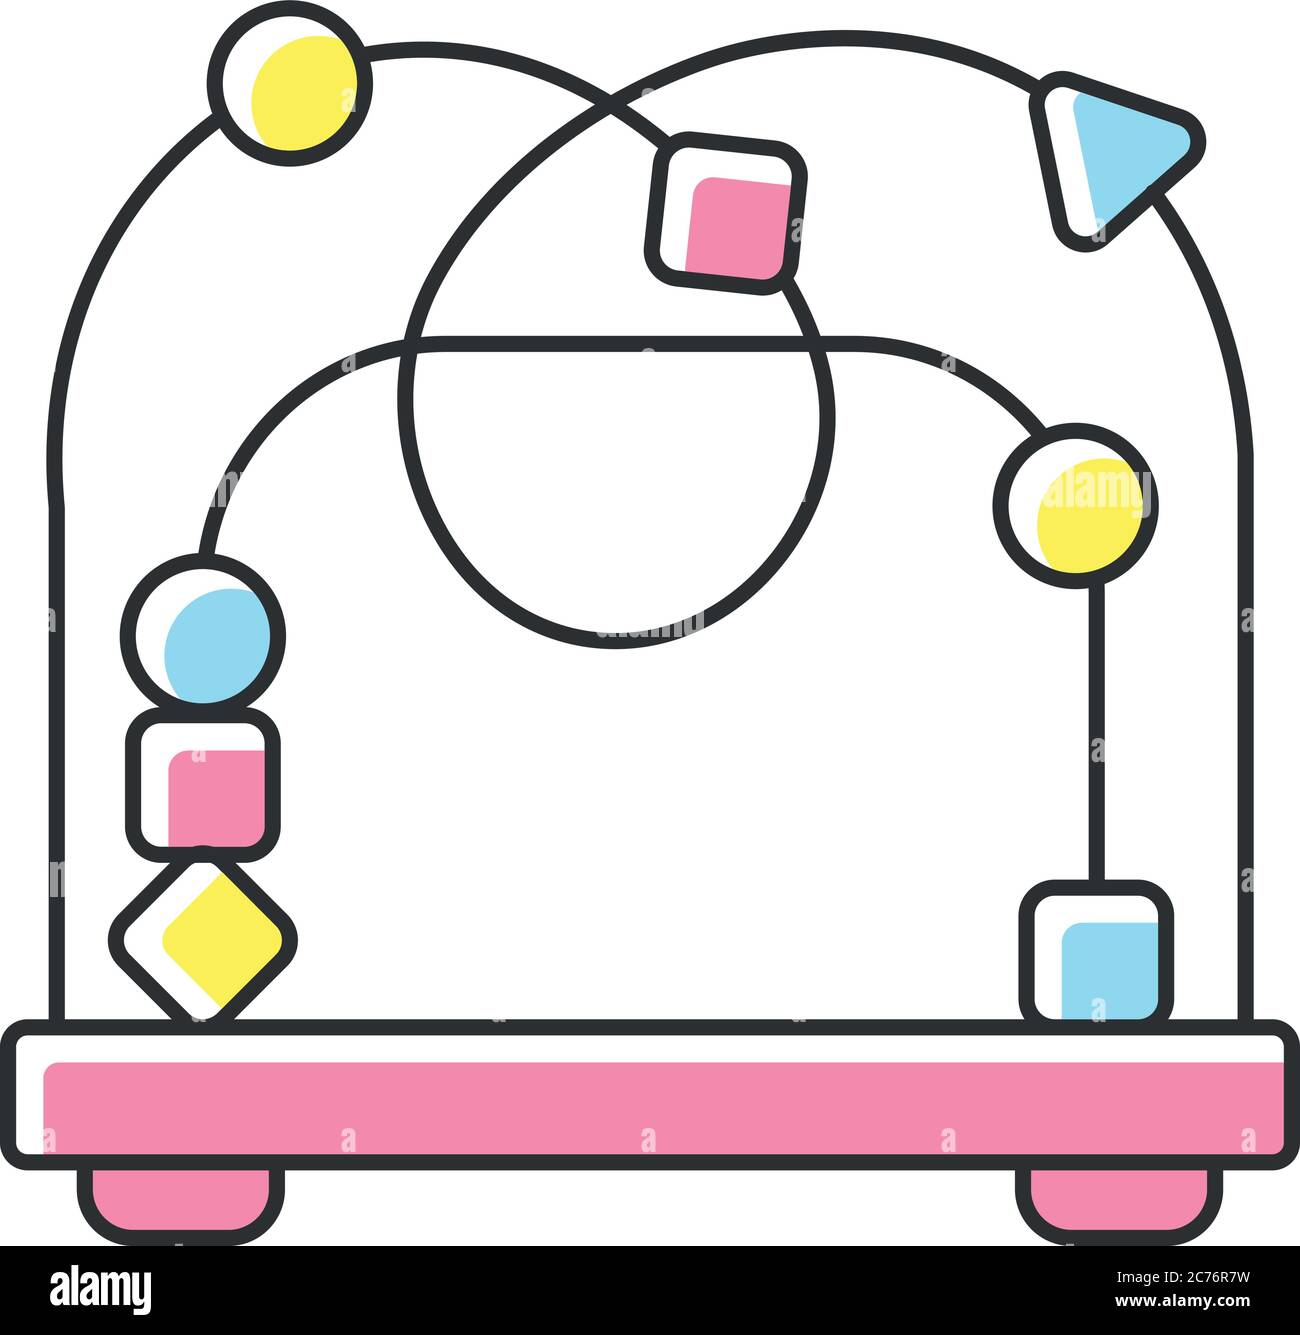 Icono de color RGB de juguete laberinto de abalorios. Montaña rusa laberinto juguetes educativos para niños. Juego de reconocimiento de forma y color. y diversión para bebés Imagen Vector de